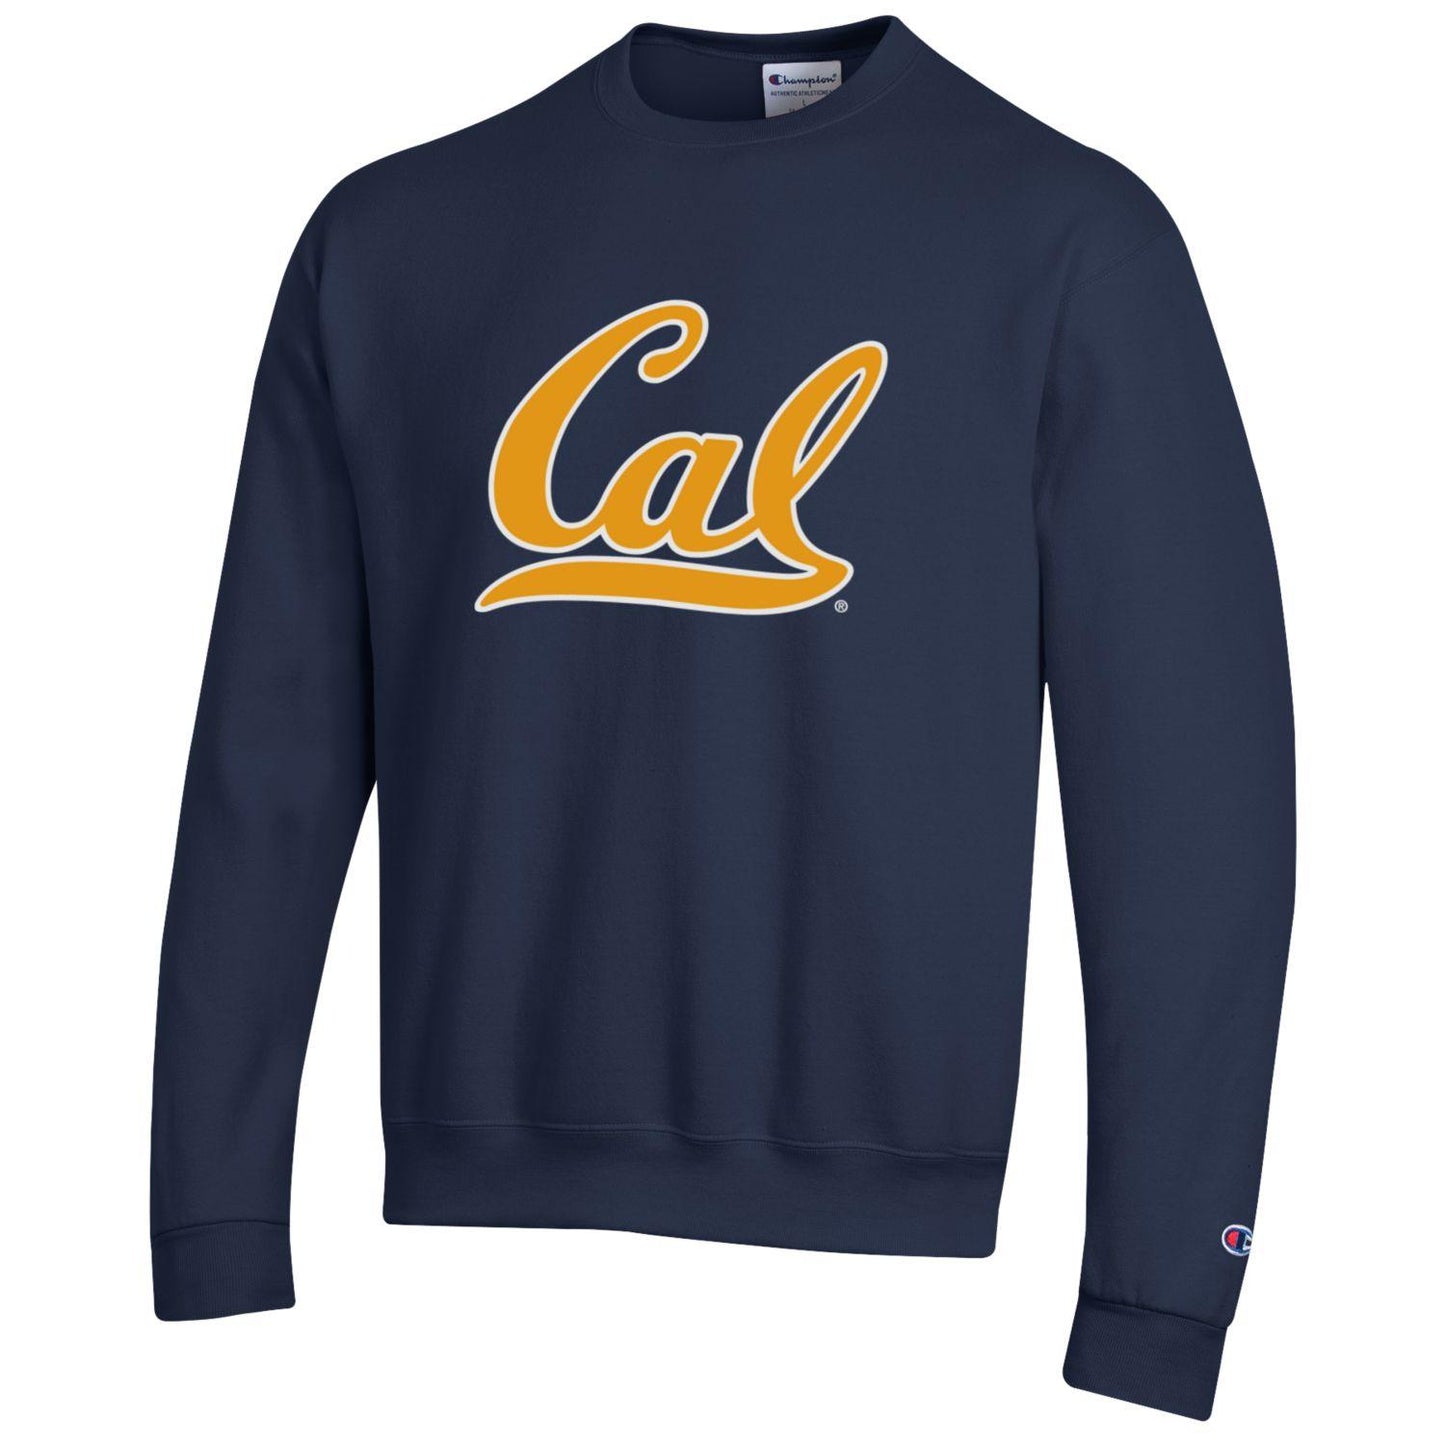 U.C. Berkeley Cal double layered Champion appilque sweatshirt-Navy-Shop College Wear